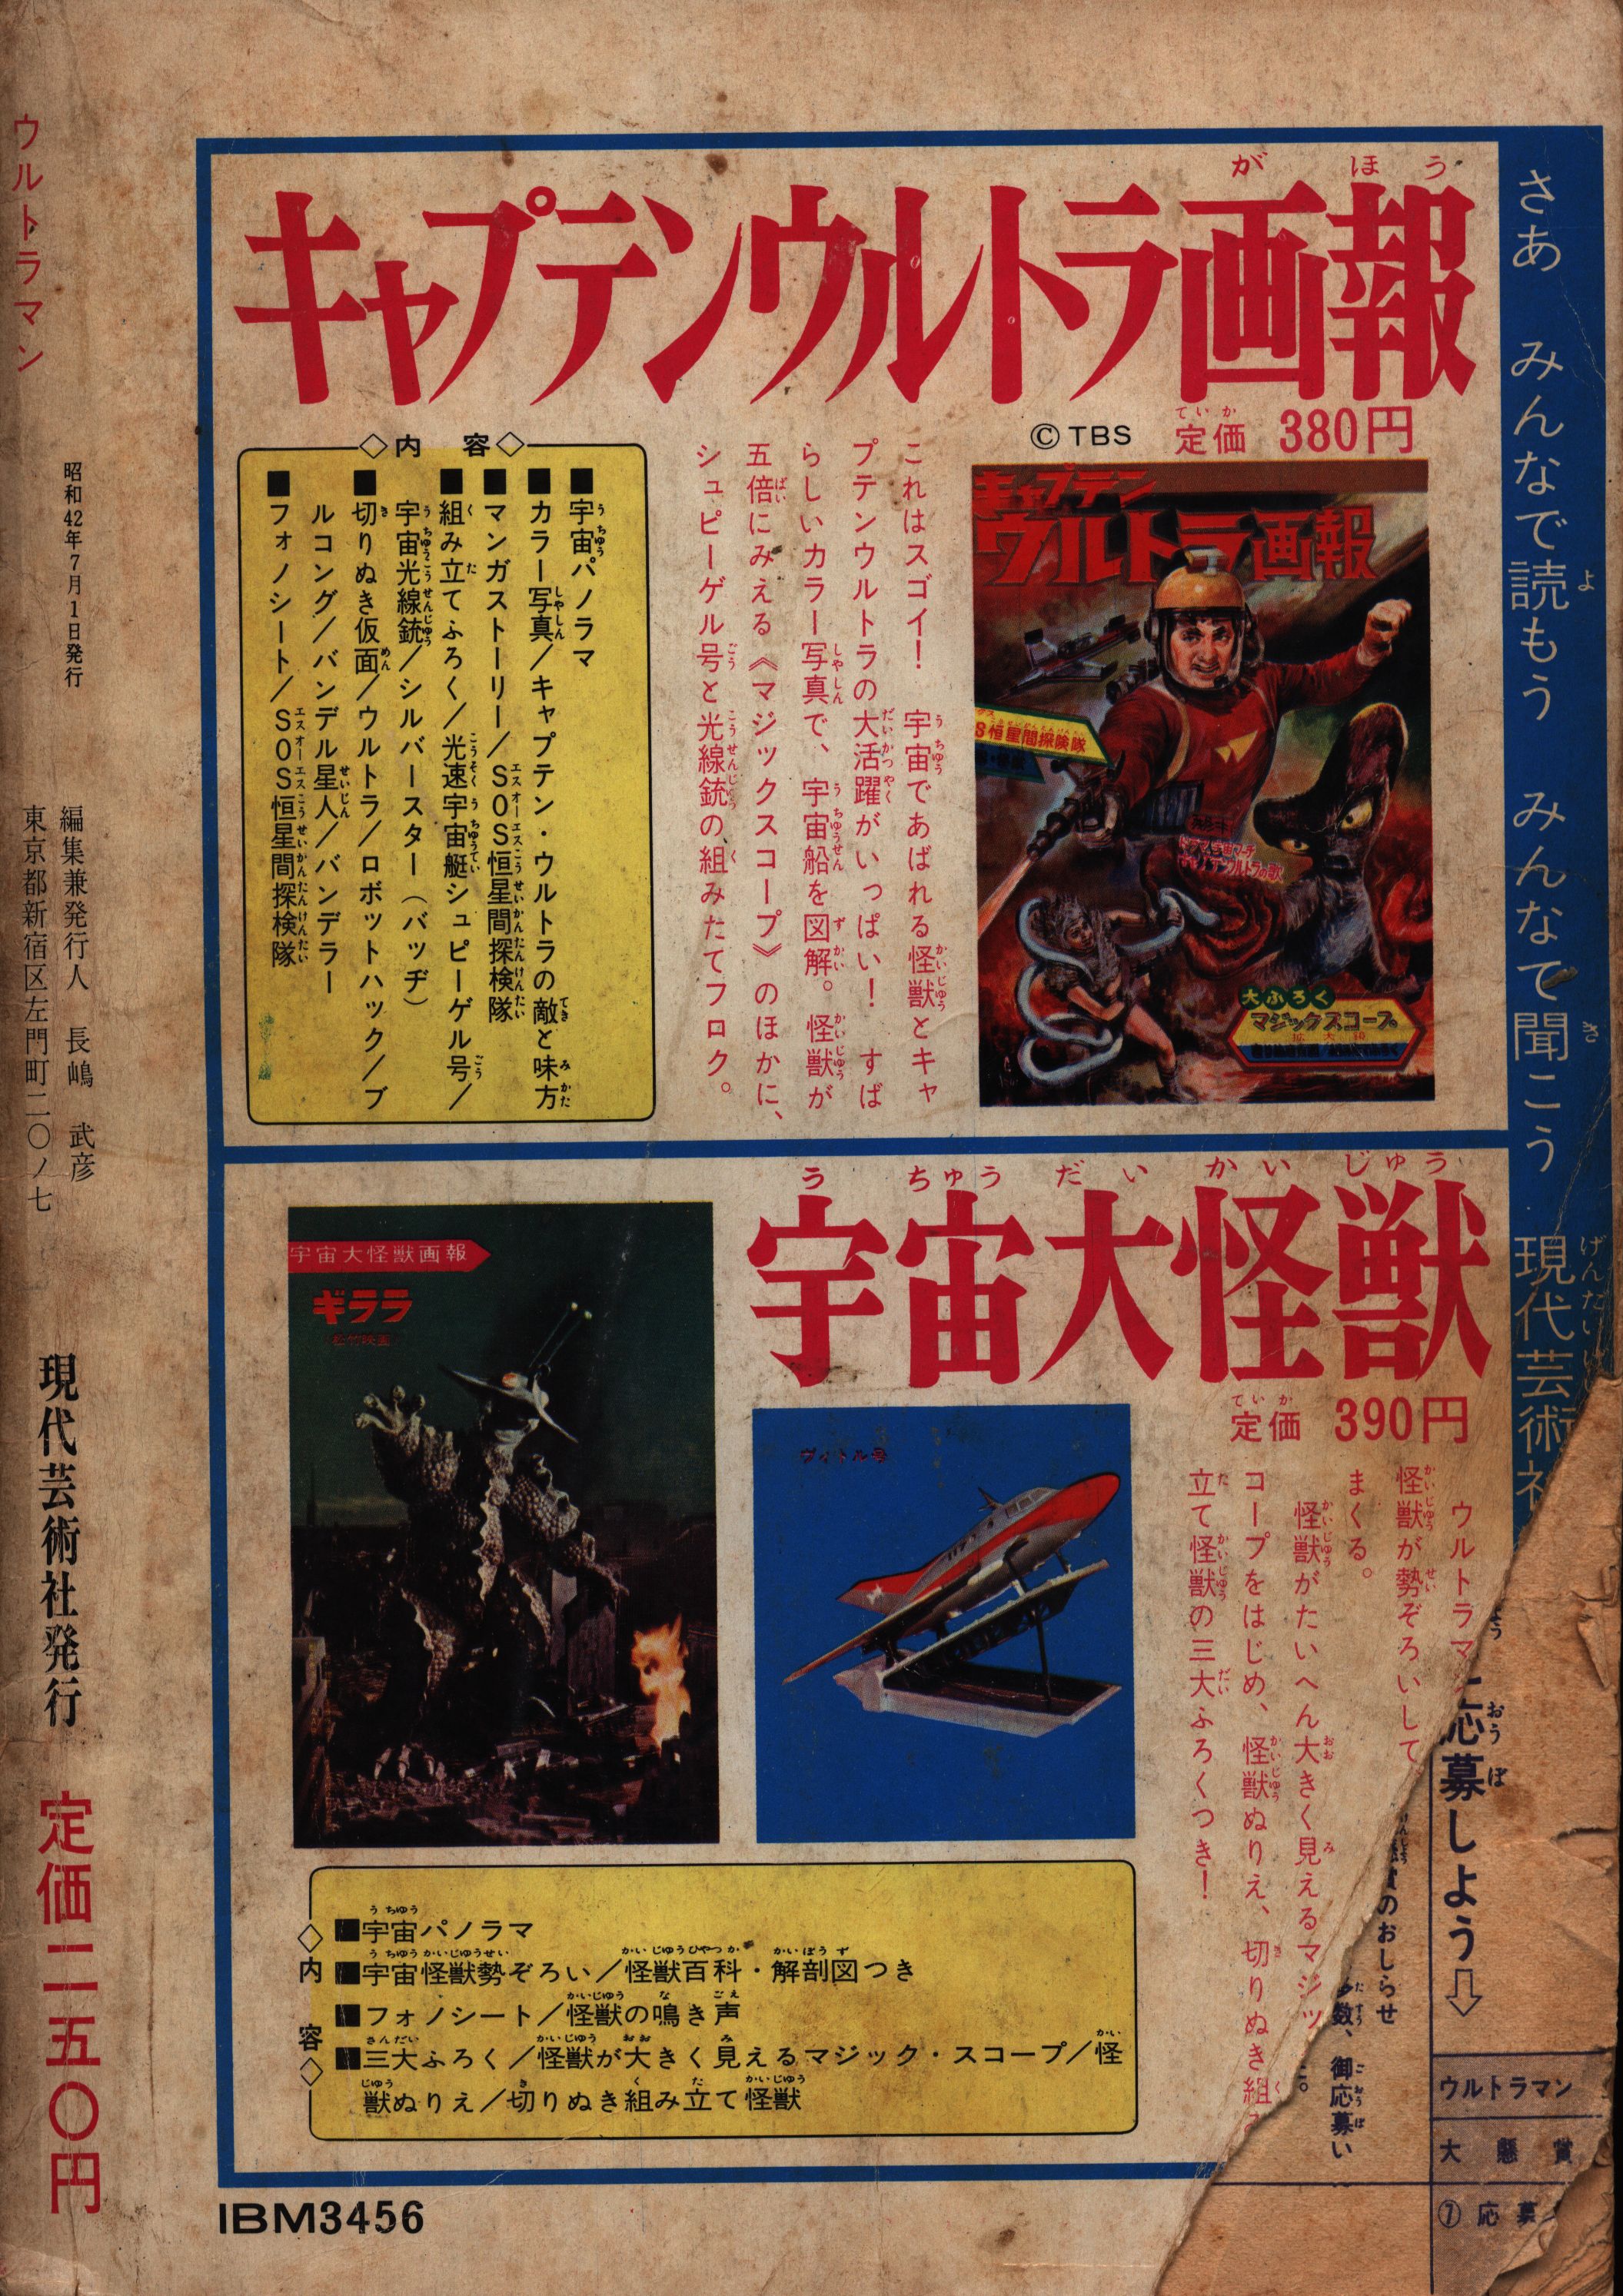 昭和レトロ初版本ウルトラマン、1967 現代コミック - 少年漫画